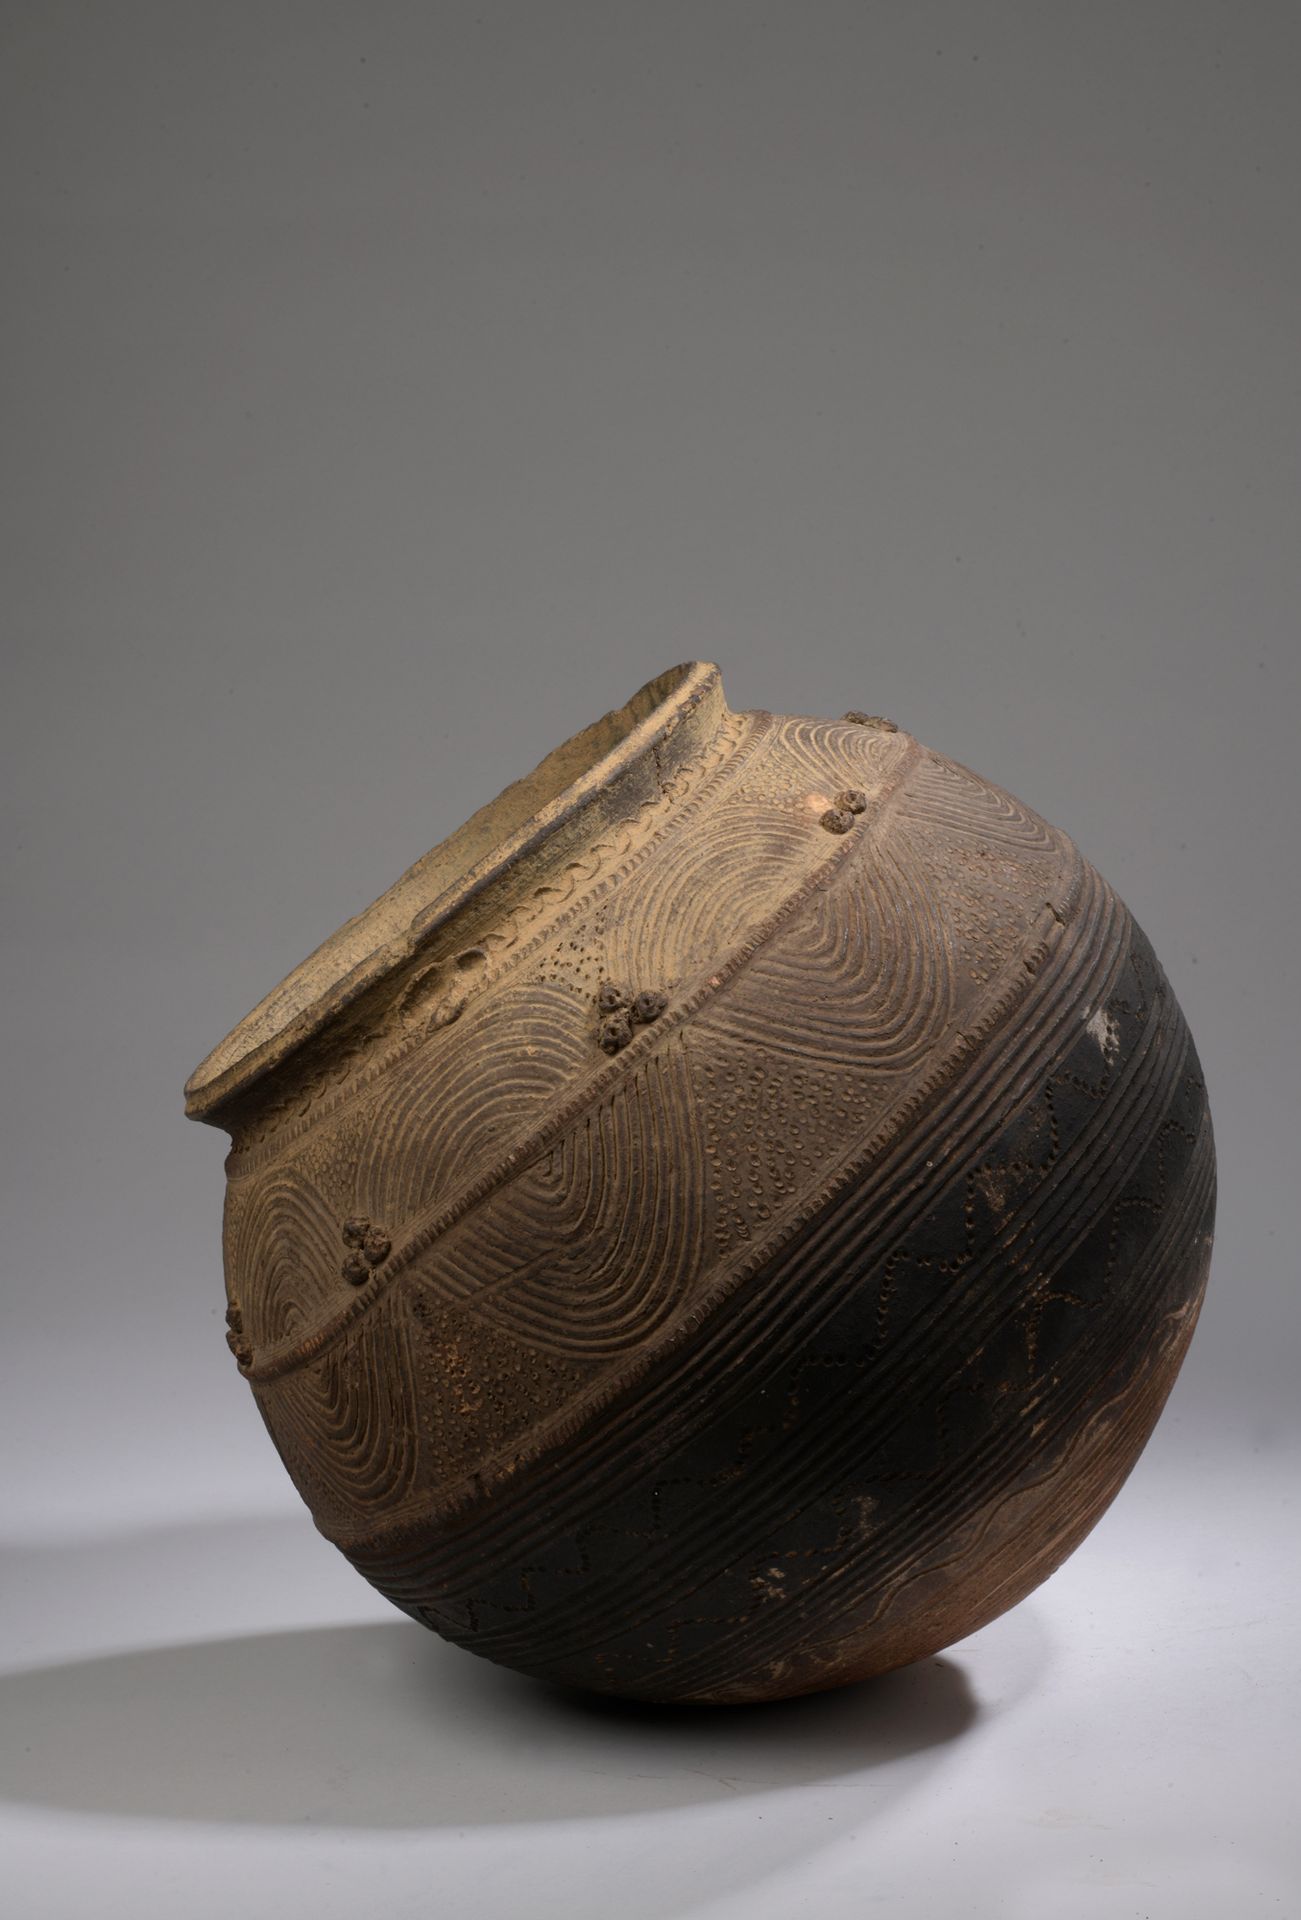 Null NUPE JARRE, 尼日利亚

陶器，带棕色滑石。

H.34 D. 32 cm

球体上装饰着丰富的几何图案，滑面有三种交替的色调。